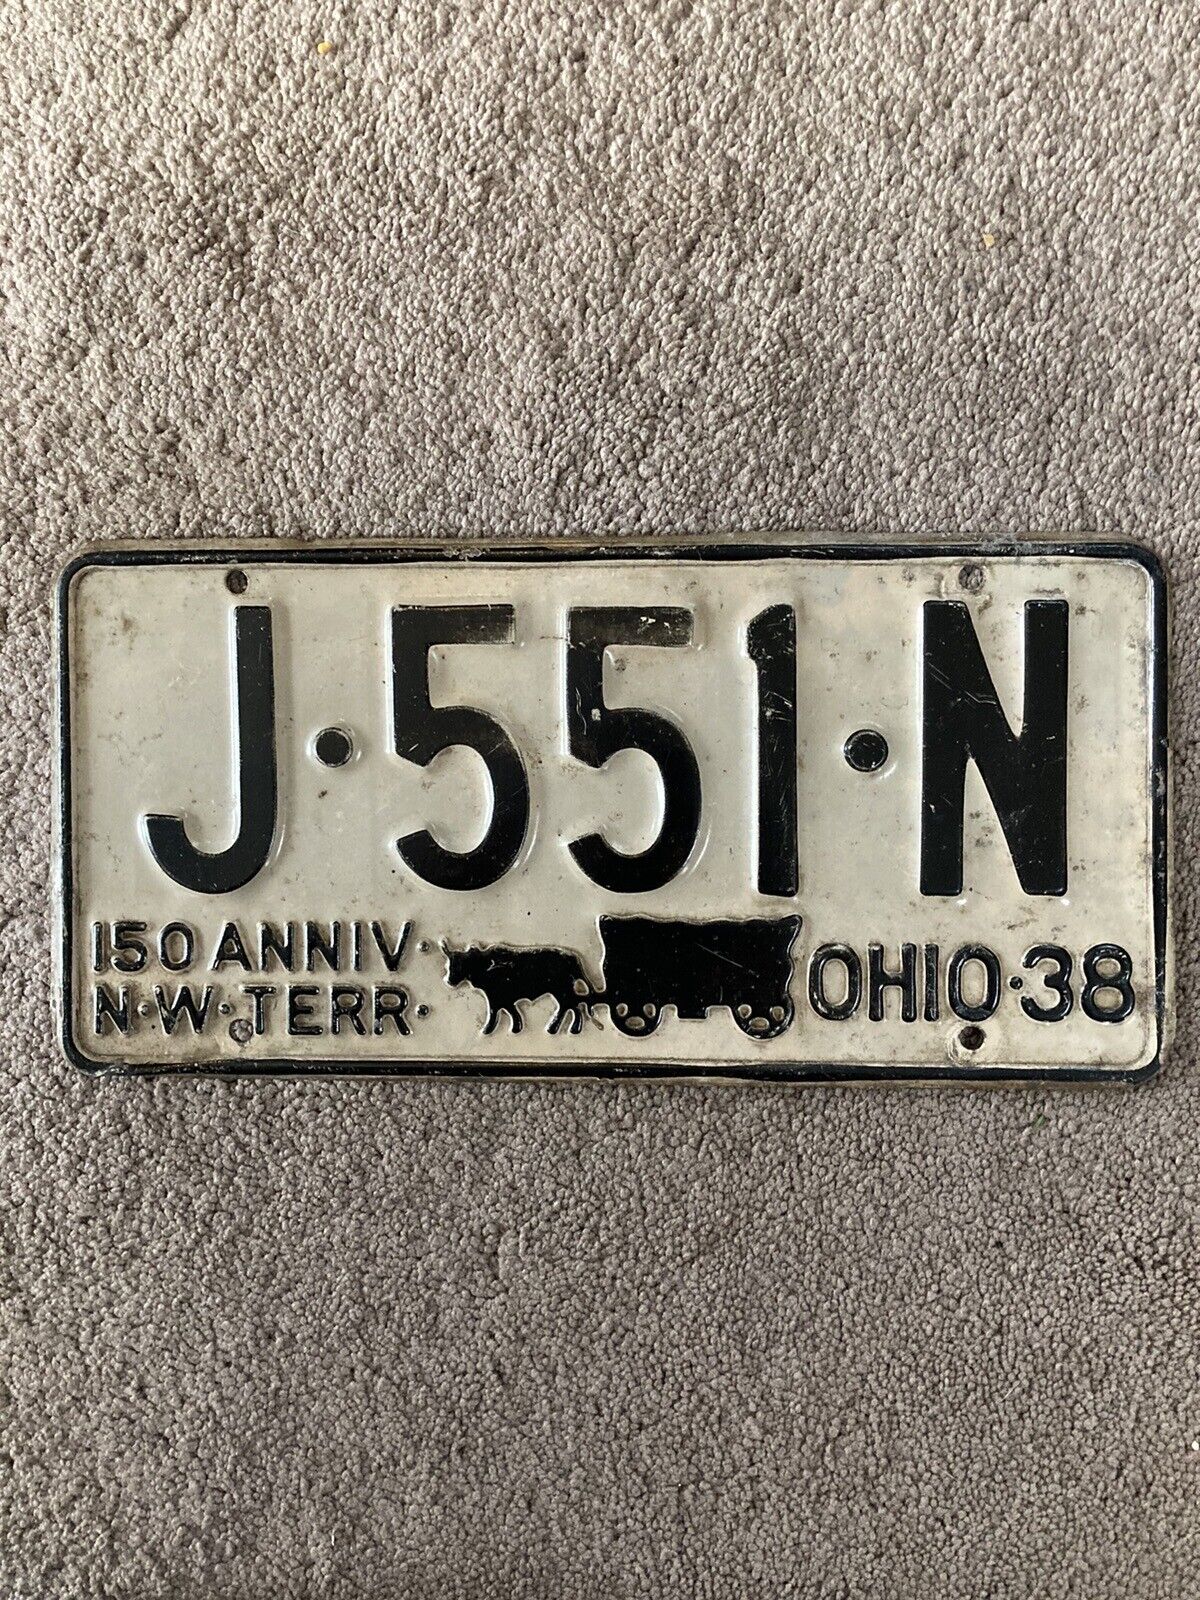 1938 Ohio License Plate - J 551 N - Nice Oldie